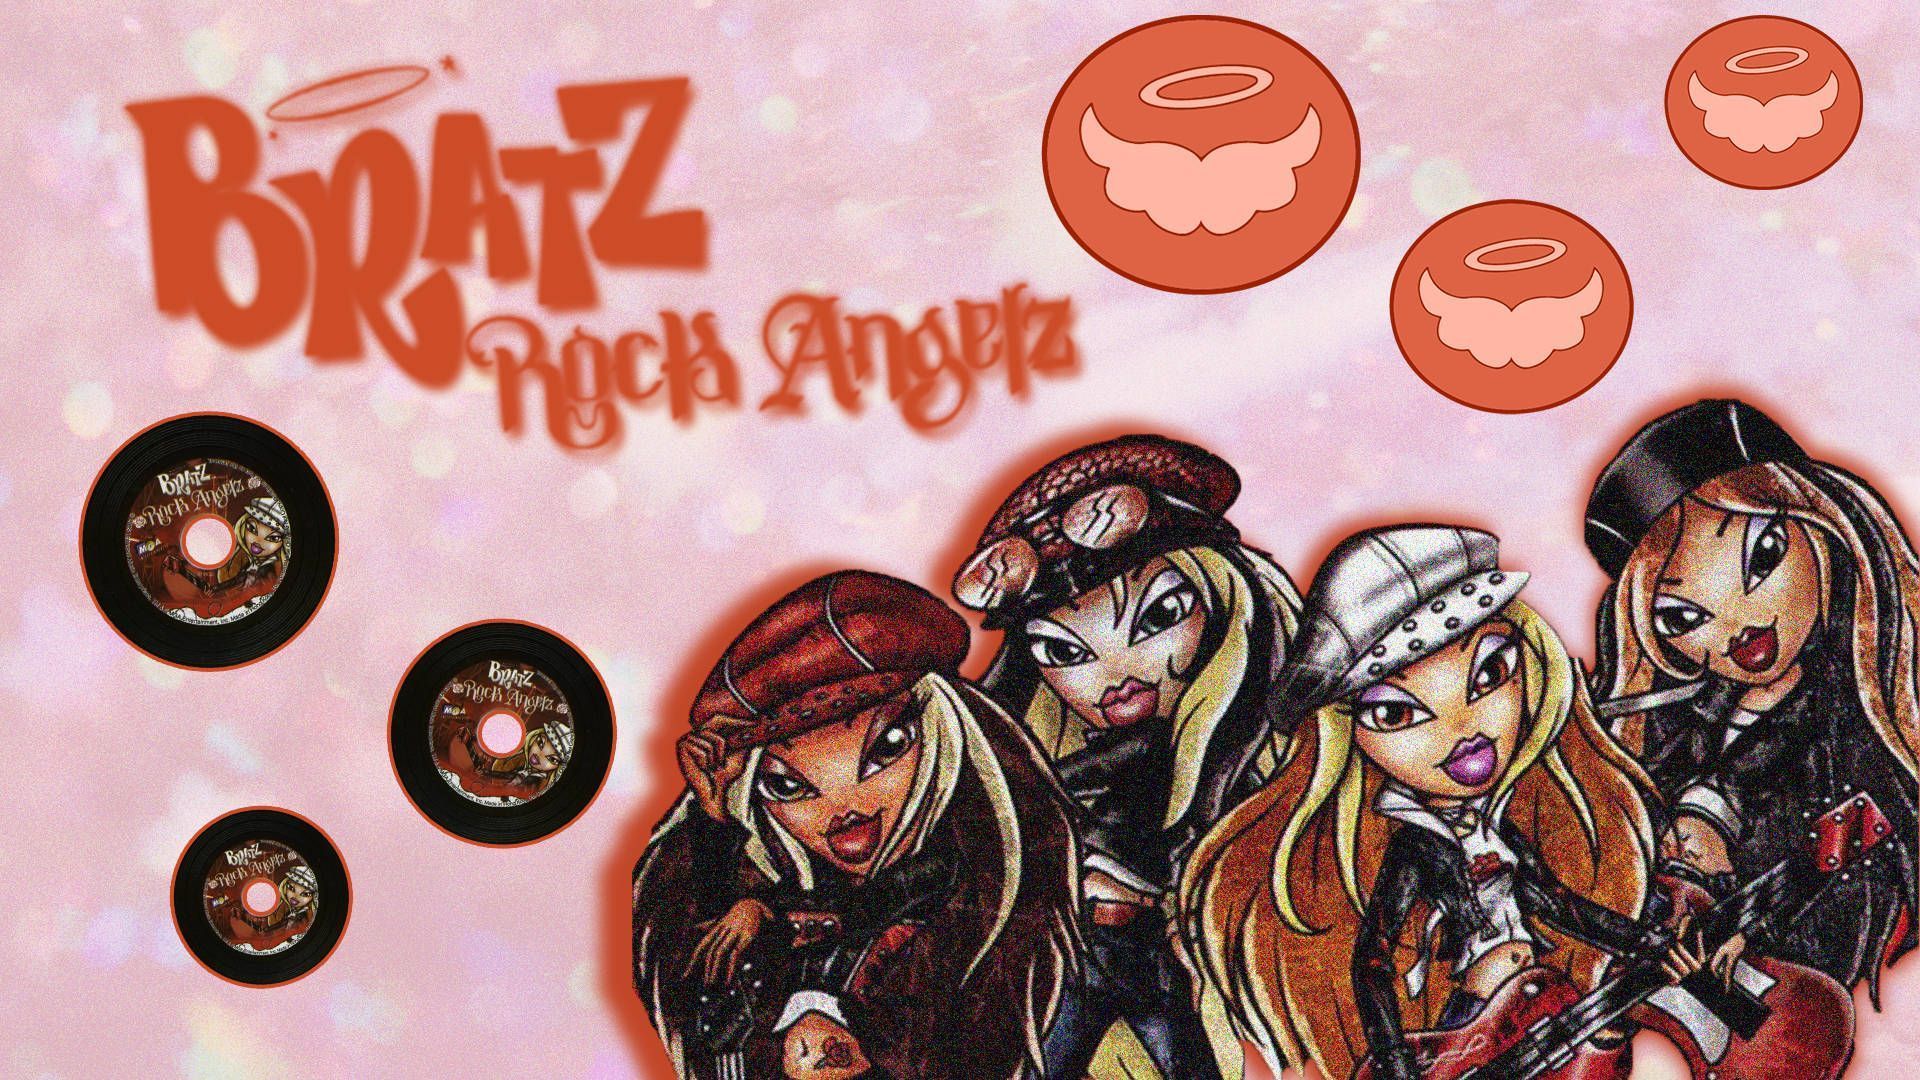 A wallpaper featuring the four main Bratz dolls as rock angels. - Bratz, rock